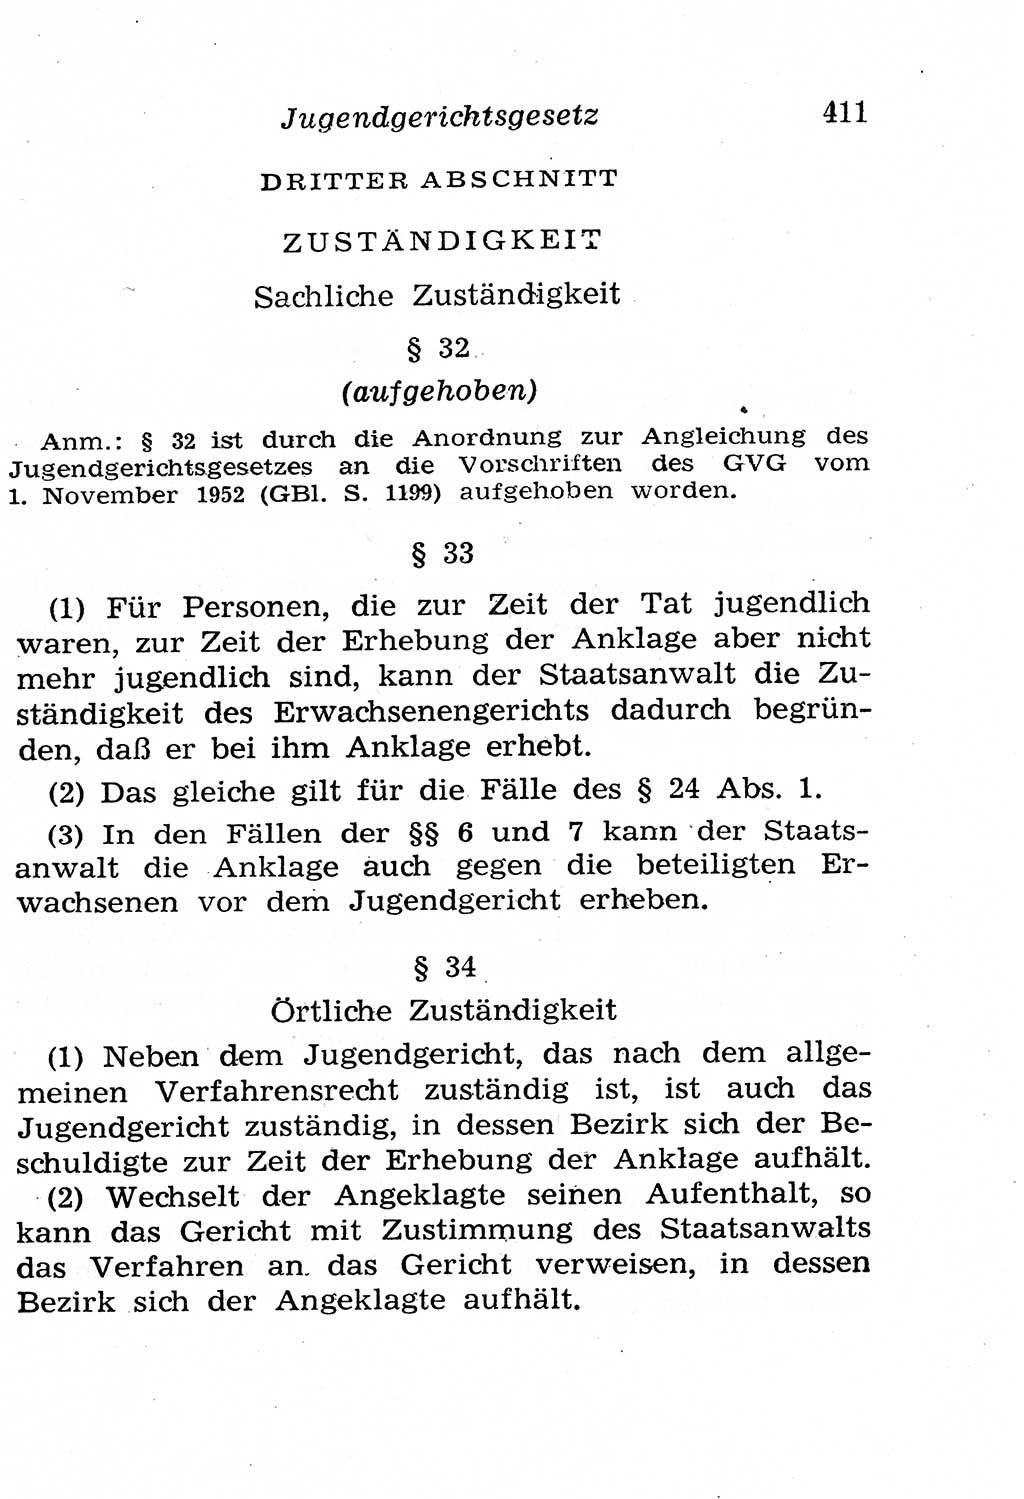 Strafgesetzbuch (StGB) und andere Strafgesetze [Deutsche Demokratische Republik (DDR)] 1958, Seite 411 (StGB Strafges. DDR 1958, S. 411)